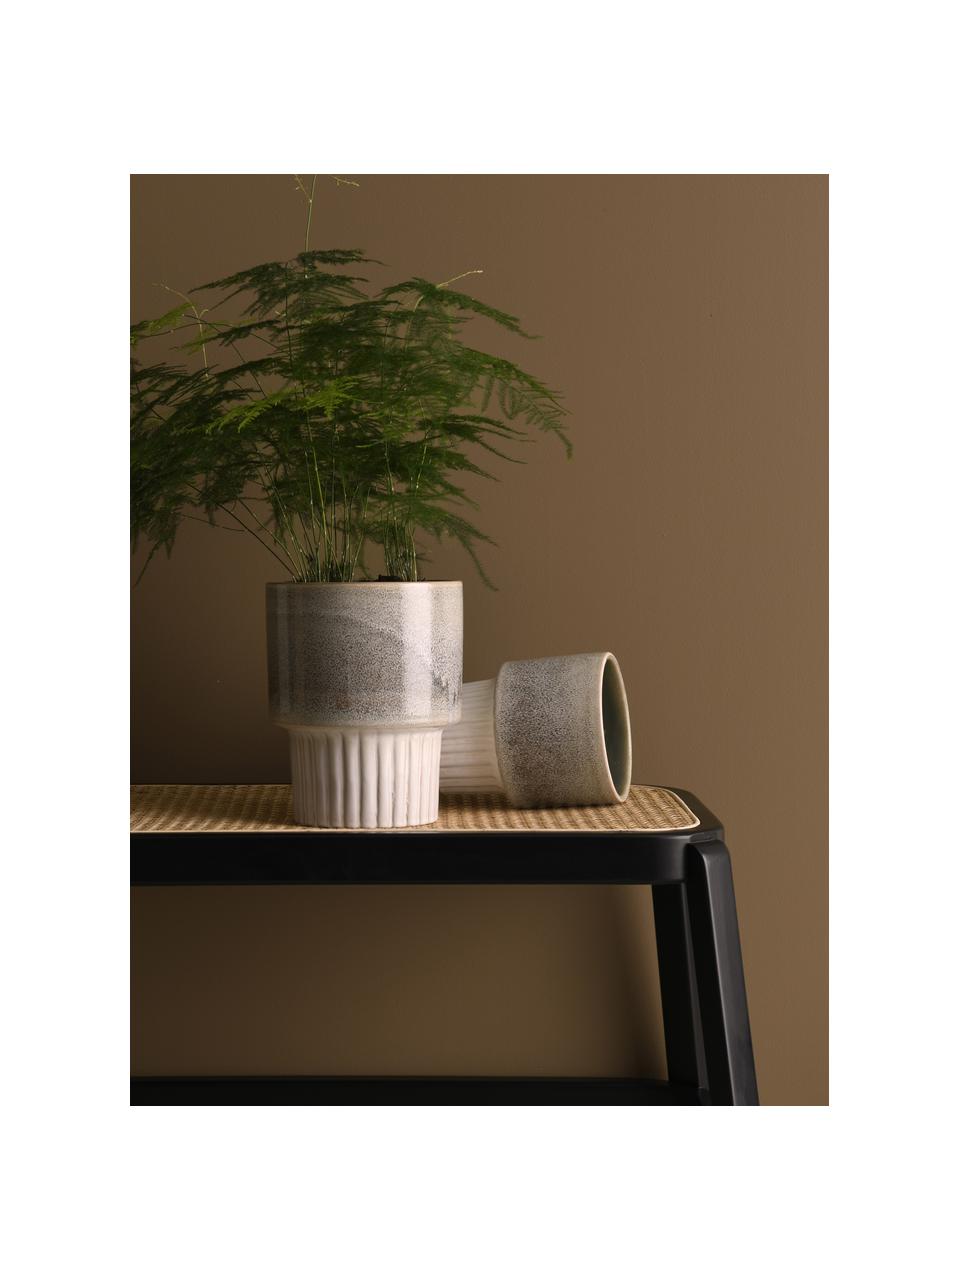 Portavaso in ceramica con gradiente Emine, Ceramica smaltata, Tonalità grigie, bianco crema, Ø 18 x Alt. 23 cm